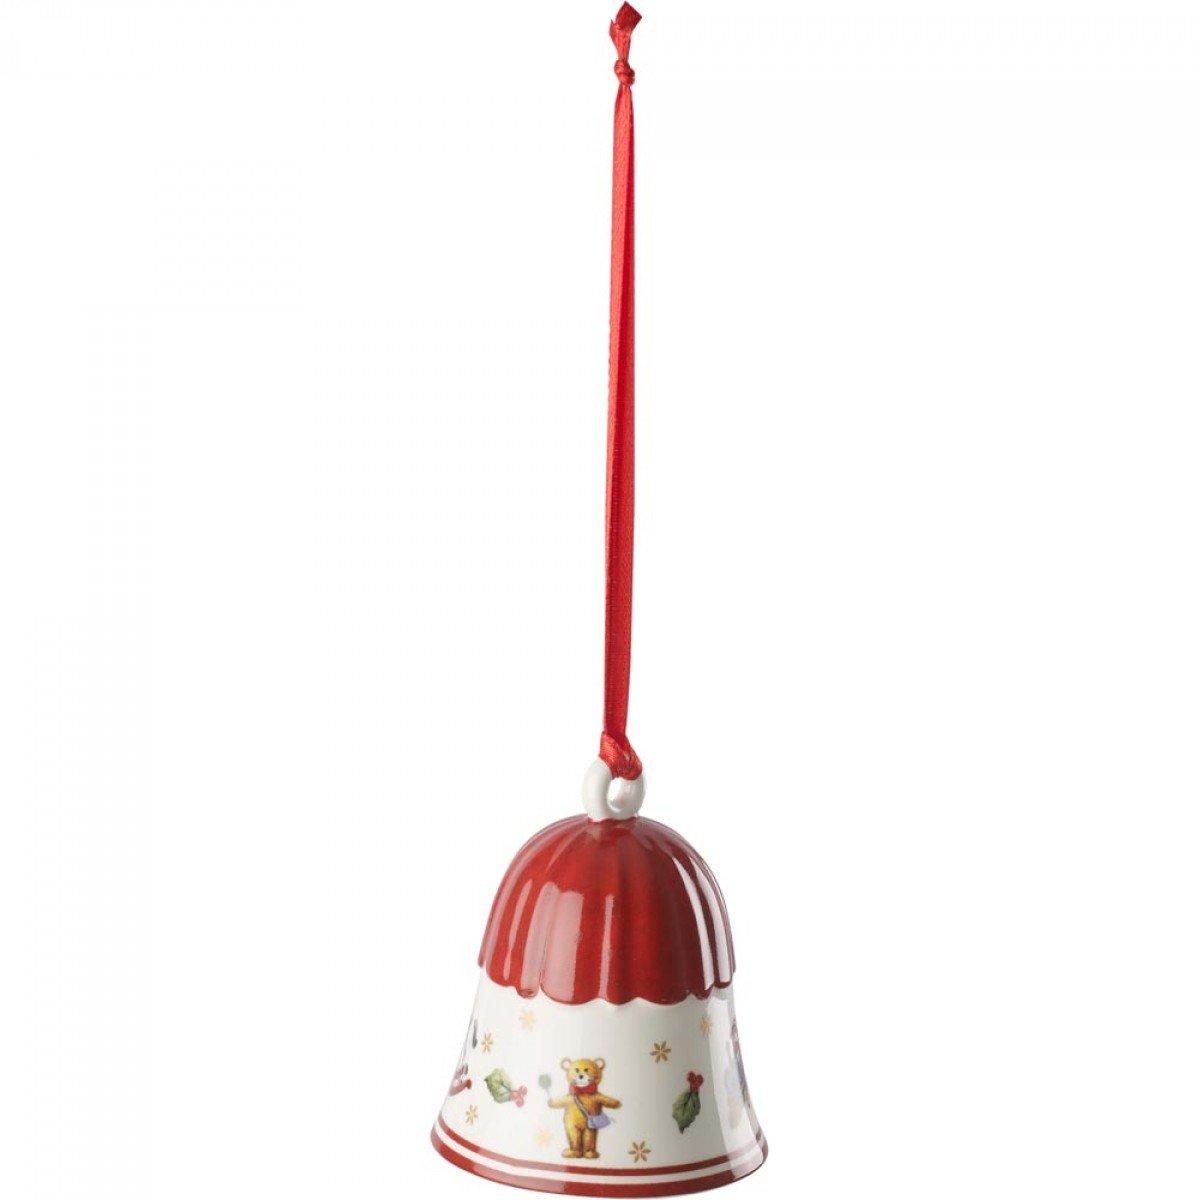 Villeroy Boch Toy's Delight dekoracja choinkowa dzwonek, porcelana, czerwony/biały/złoty 14-8659-6852